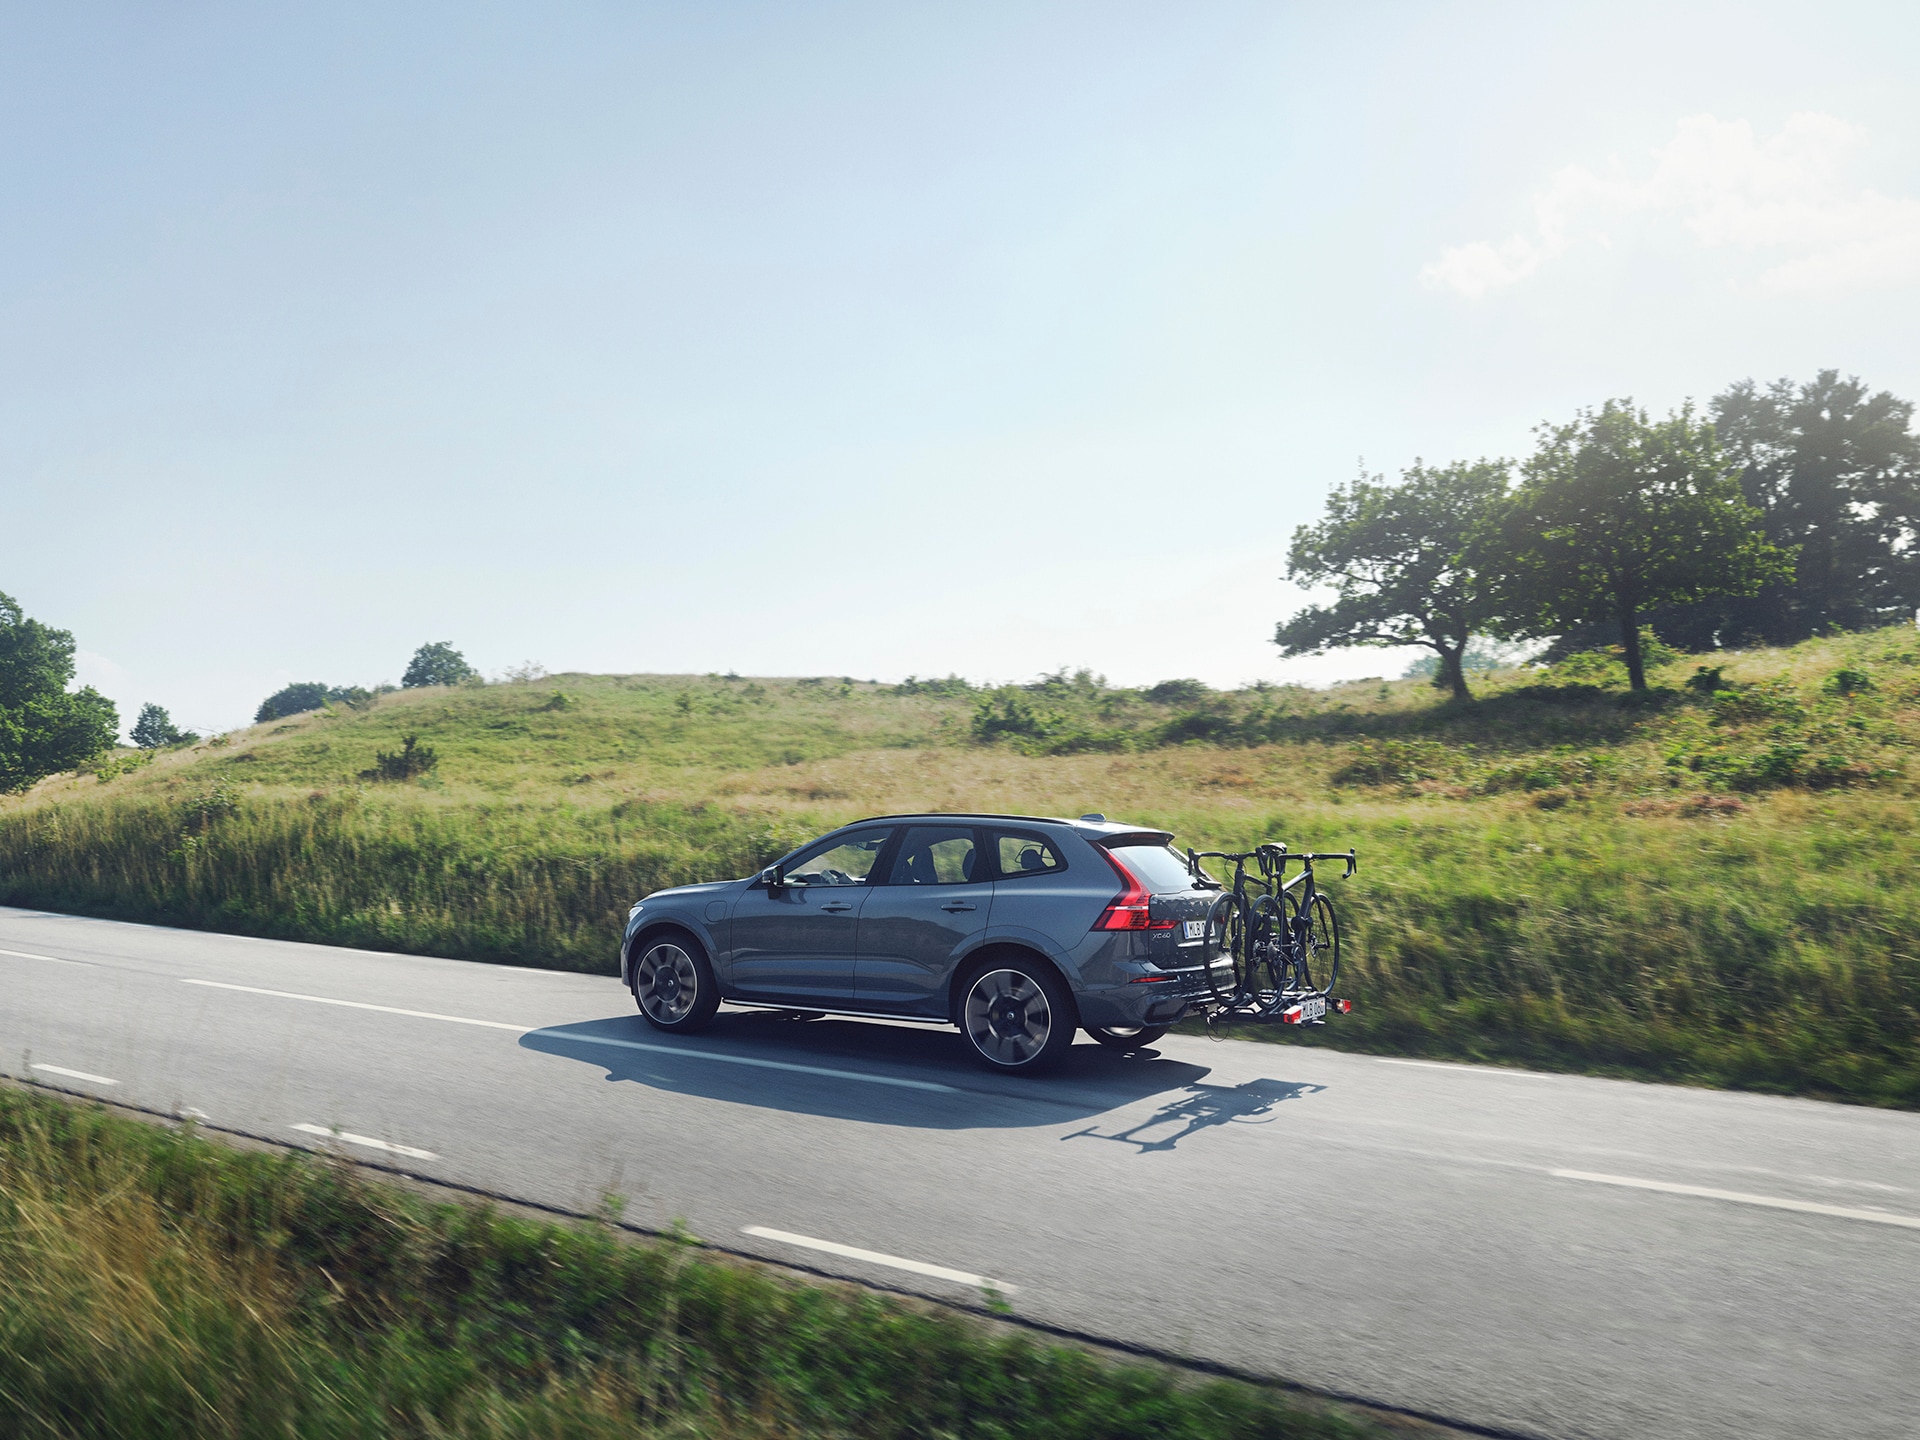 Un Volvo XC60 con portabicicletas conducido en una carretera que cruza una planicie de áreas verdes.